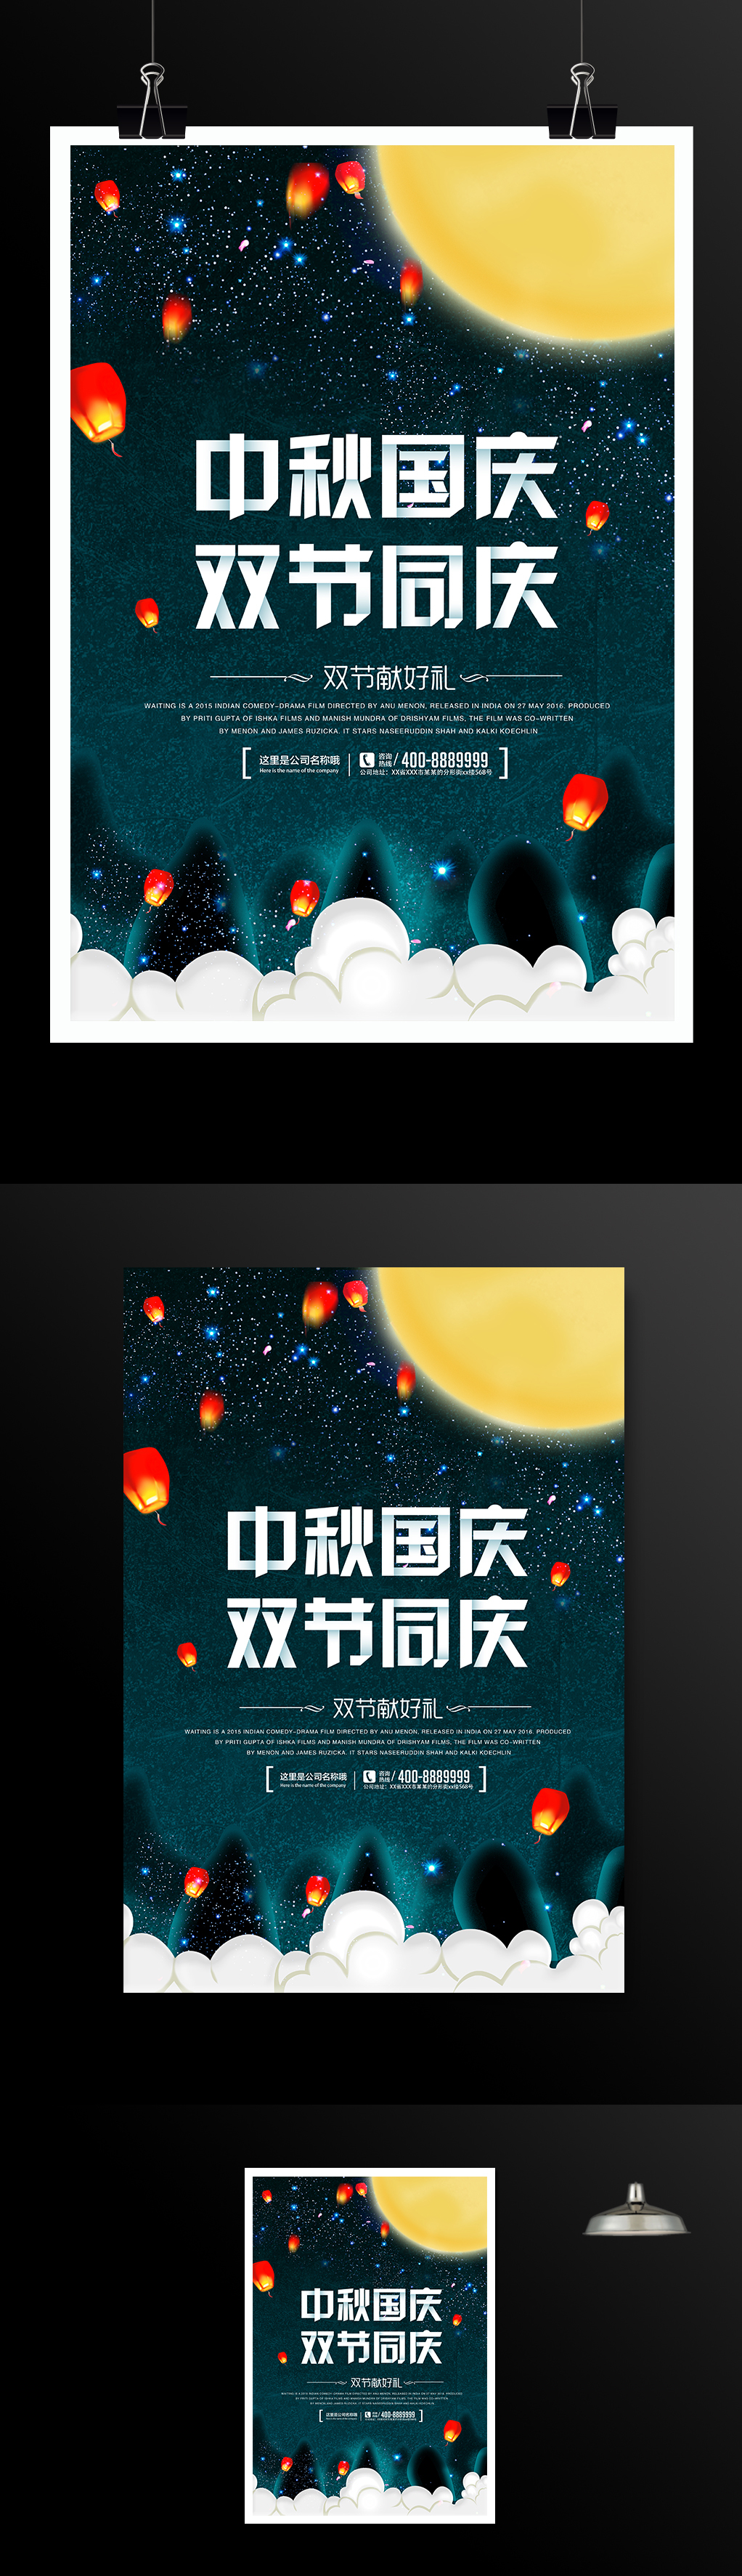 中秋国庆促销海报模板设计